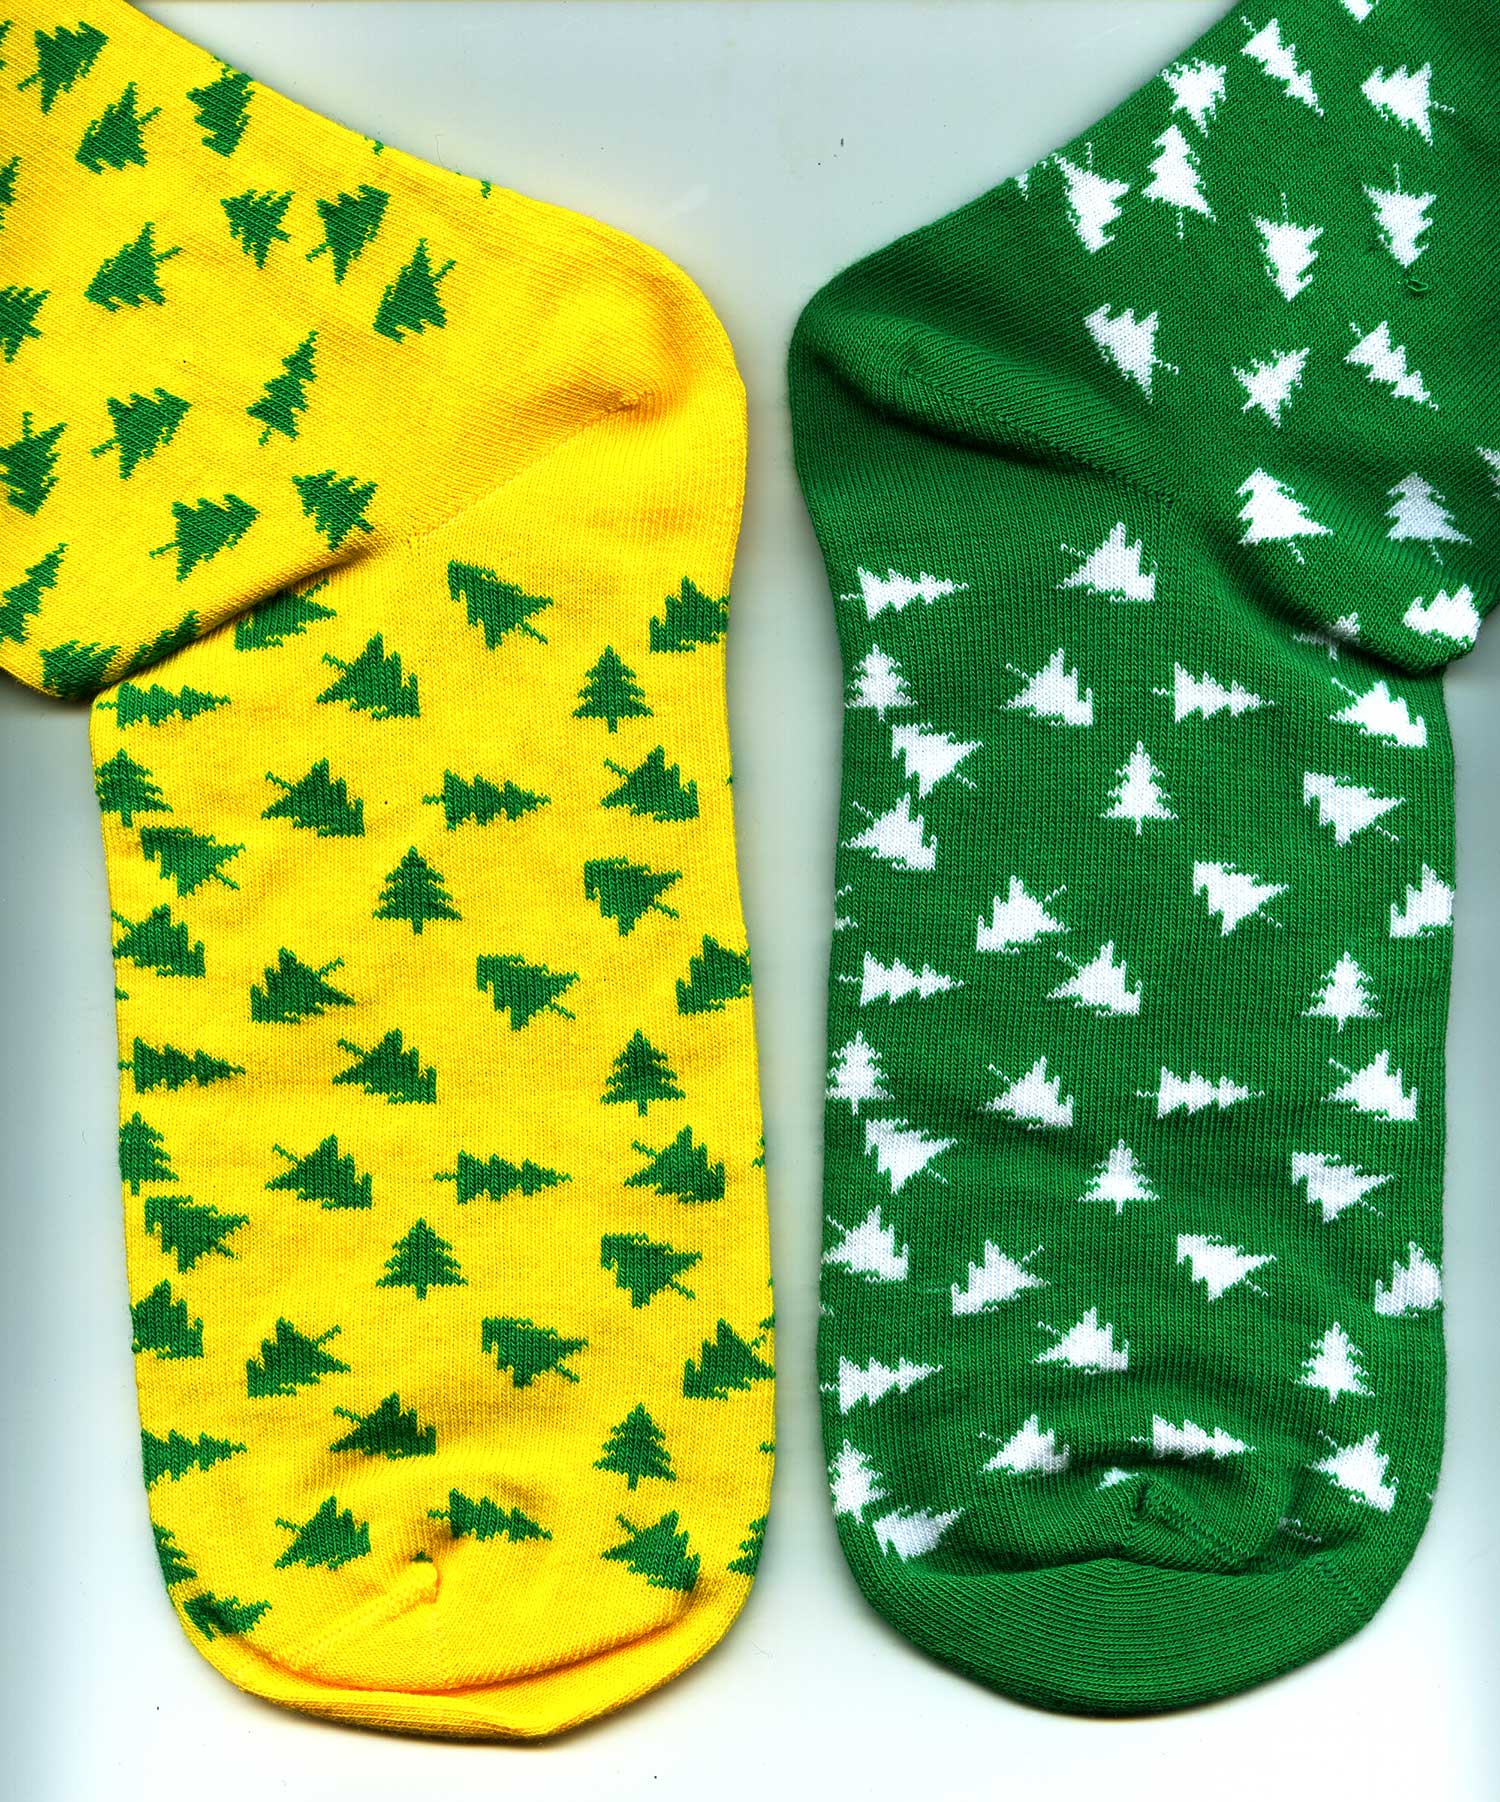 Новогодние мужские носки Omsa. Изображение ©bracatuS.com